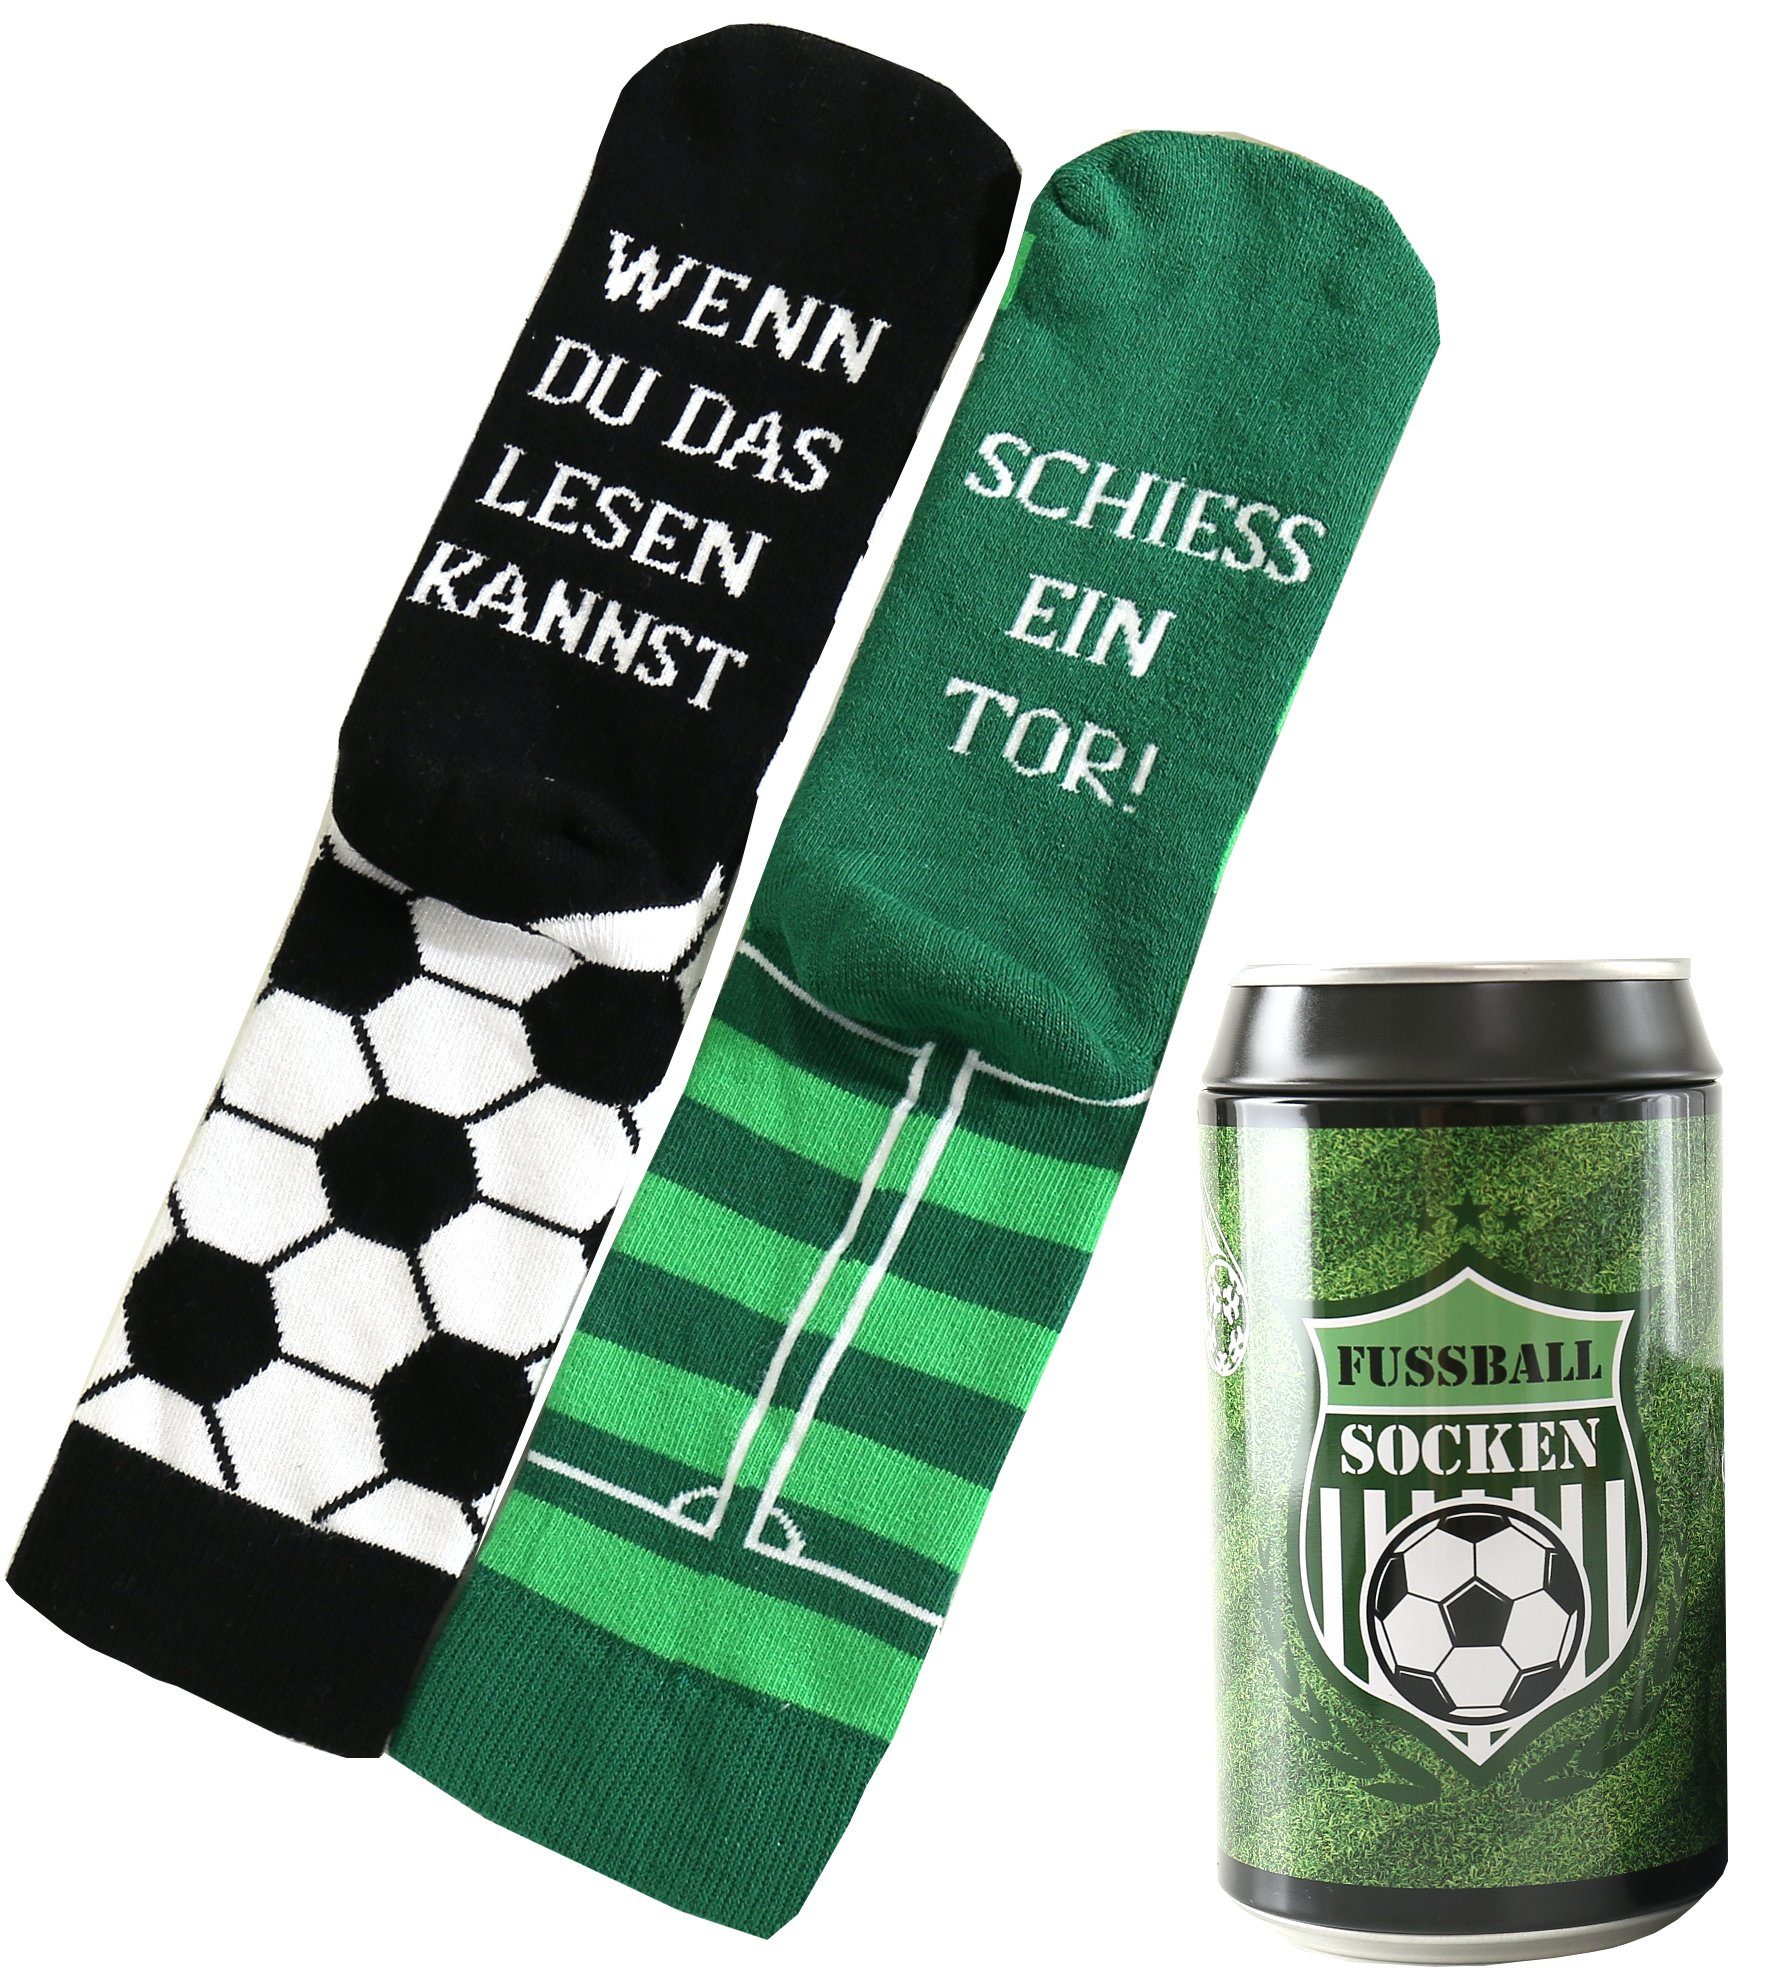 Lucadeau Freizeitsocken Lustige Fussball Шкарпетки, Geschenk für Männer, wenn du das lesen kannst (1 Paar) rutschfest, Gr. 39-46, Geschenk zum Vatertag, Geburtstagsgeschenk